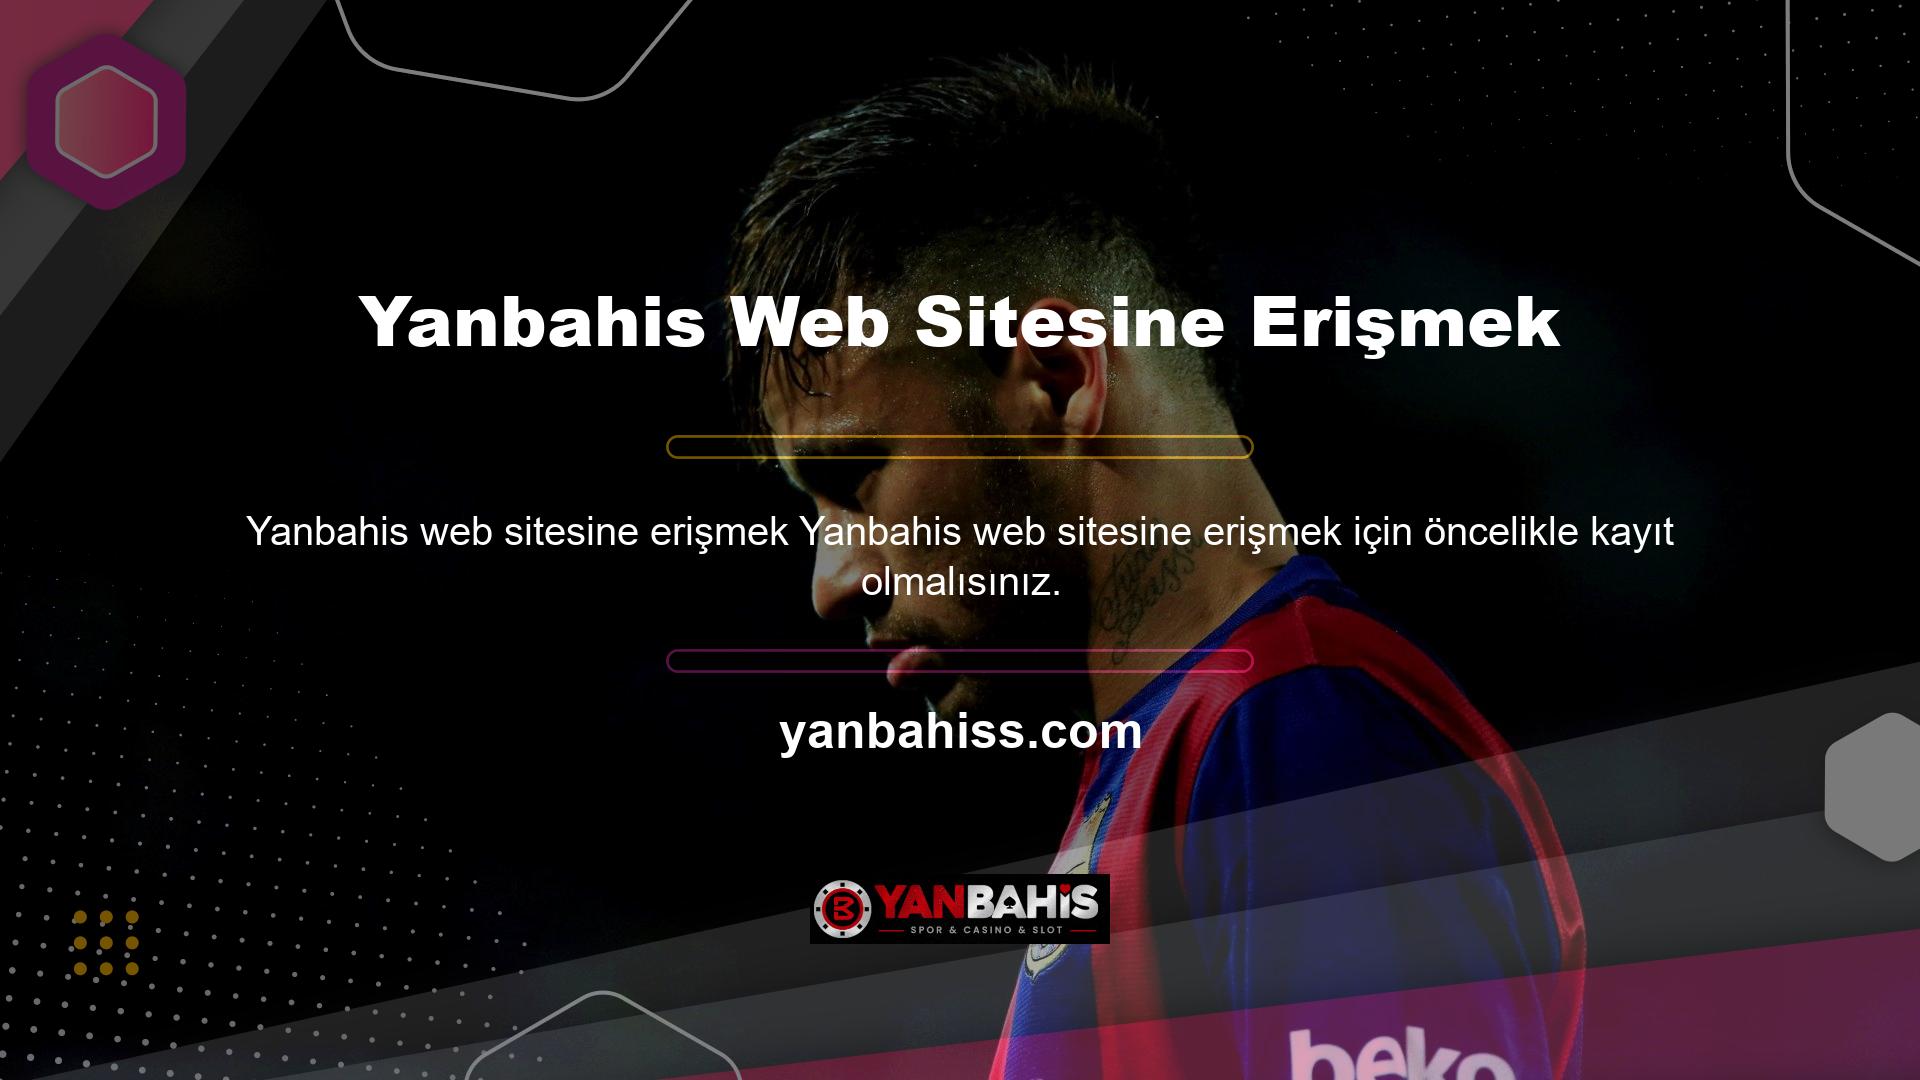 Üyeler Yanbahis web sitesine erişmek abonelik seçeneğini rahatlıkla kullanabilirler